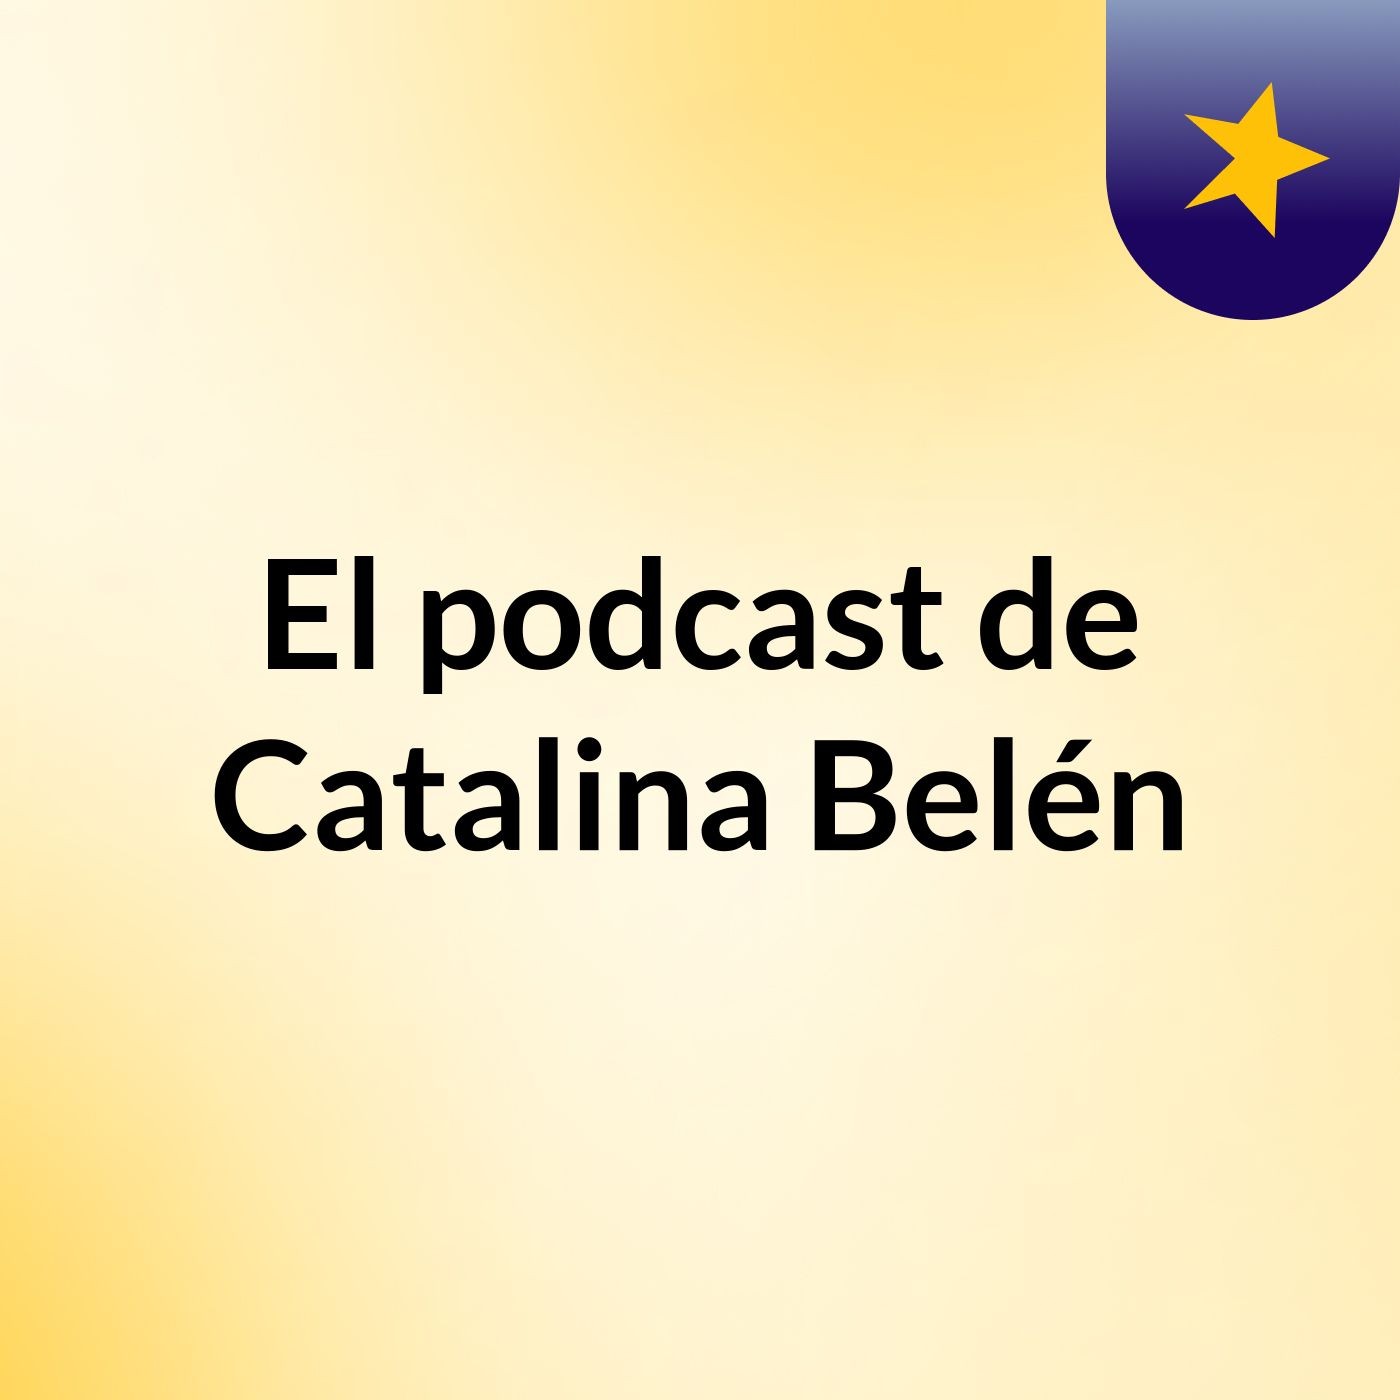 Episodio 11 - El podcast de Catalina Belén